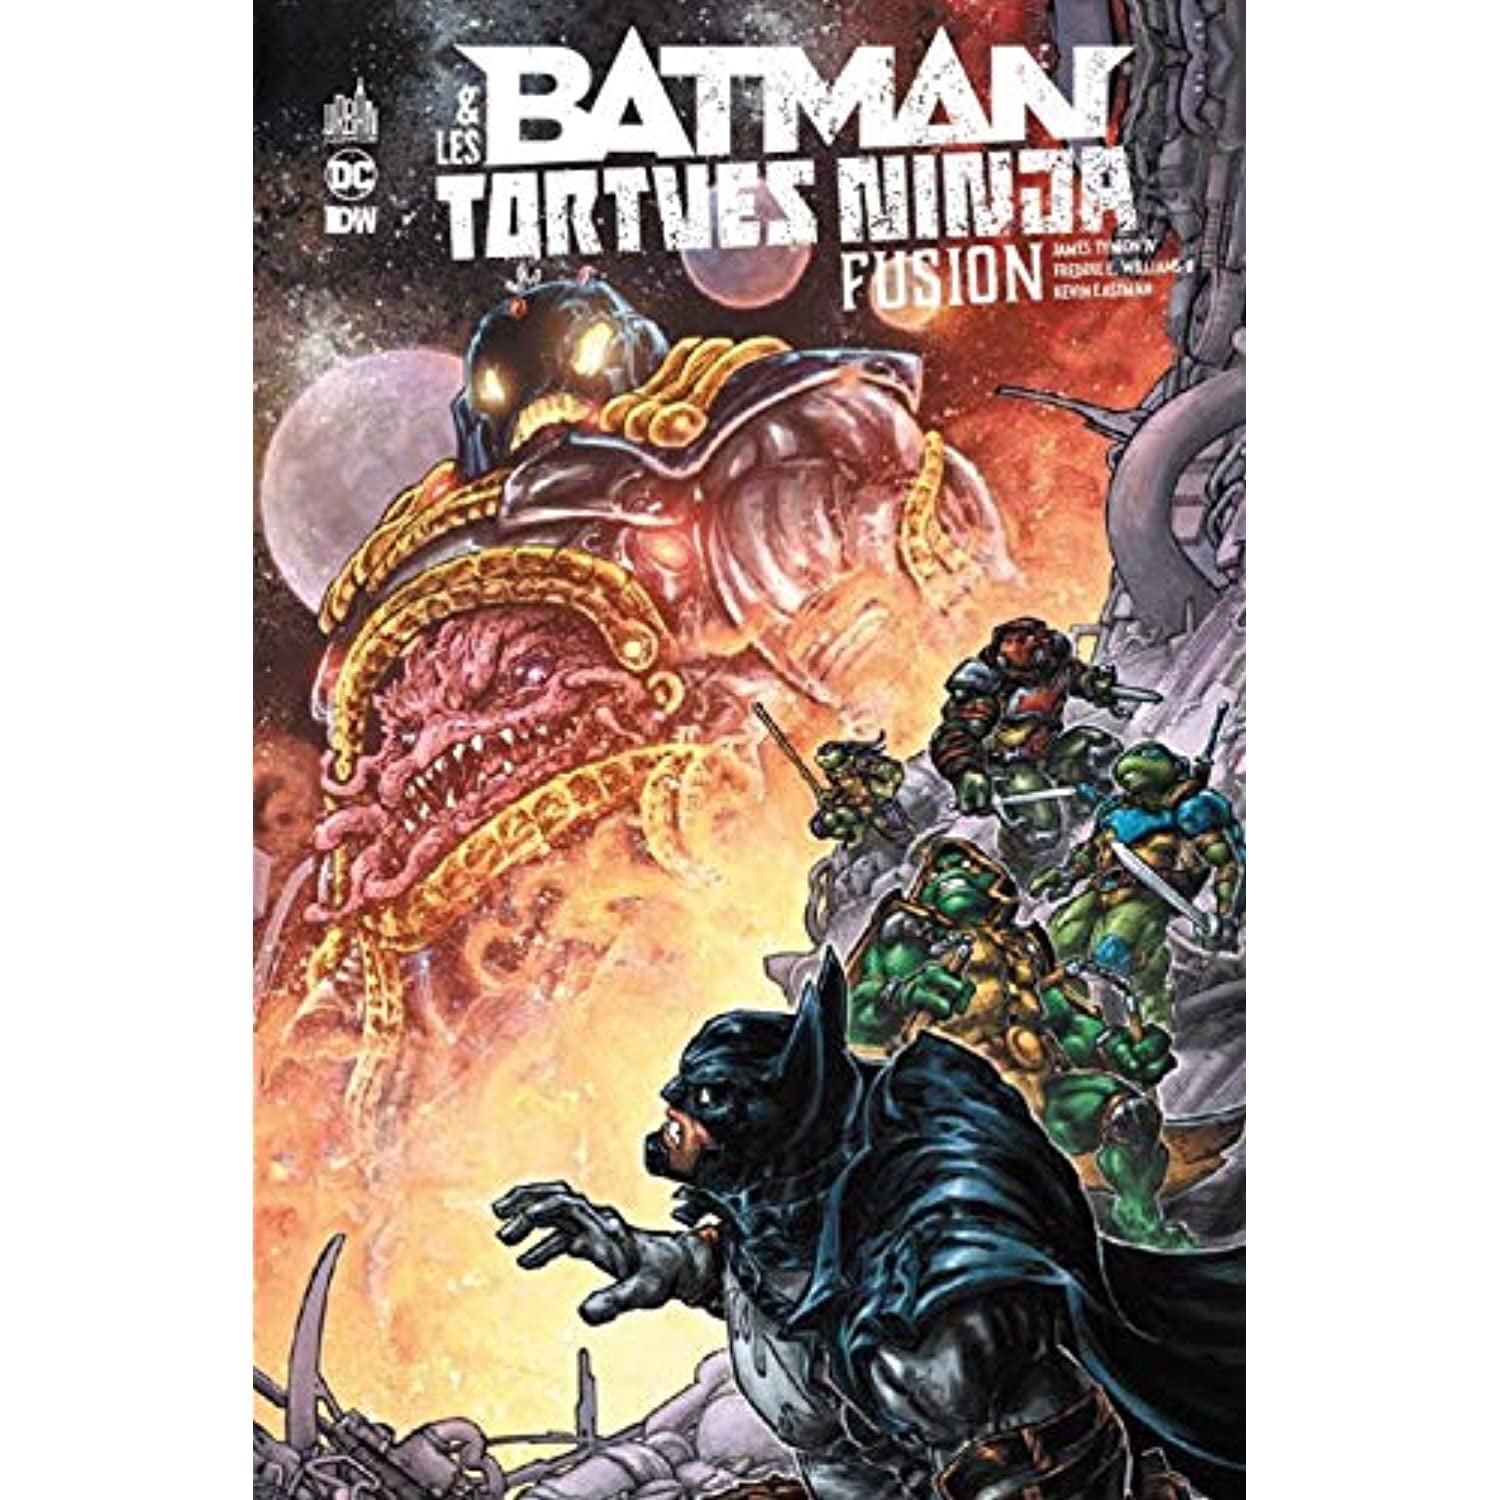 Batman et les tortues ninja fusion | Walmart Canada